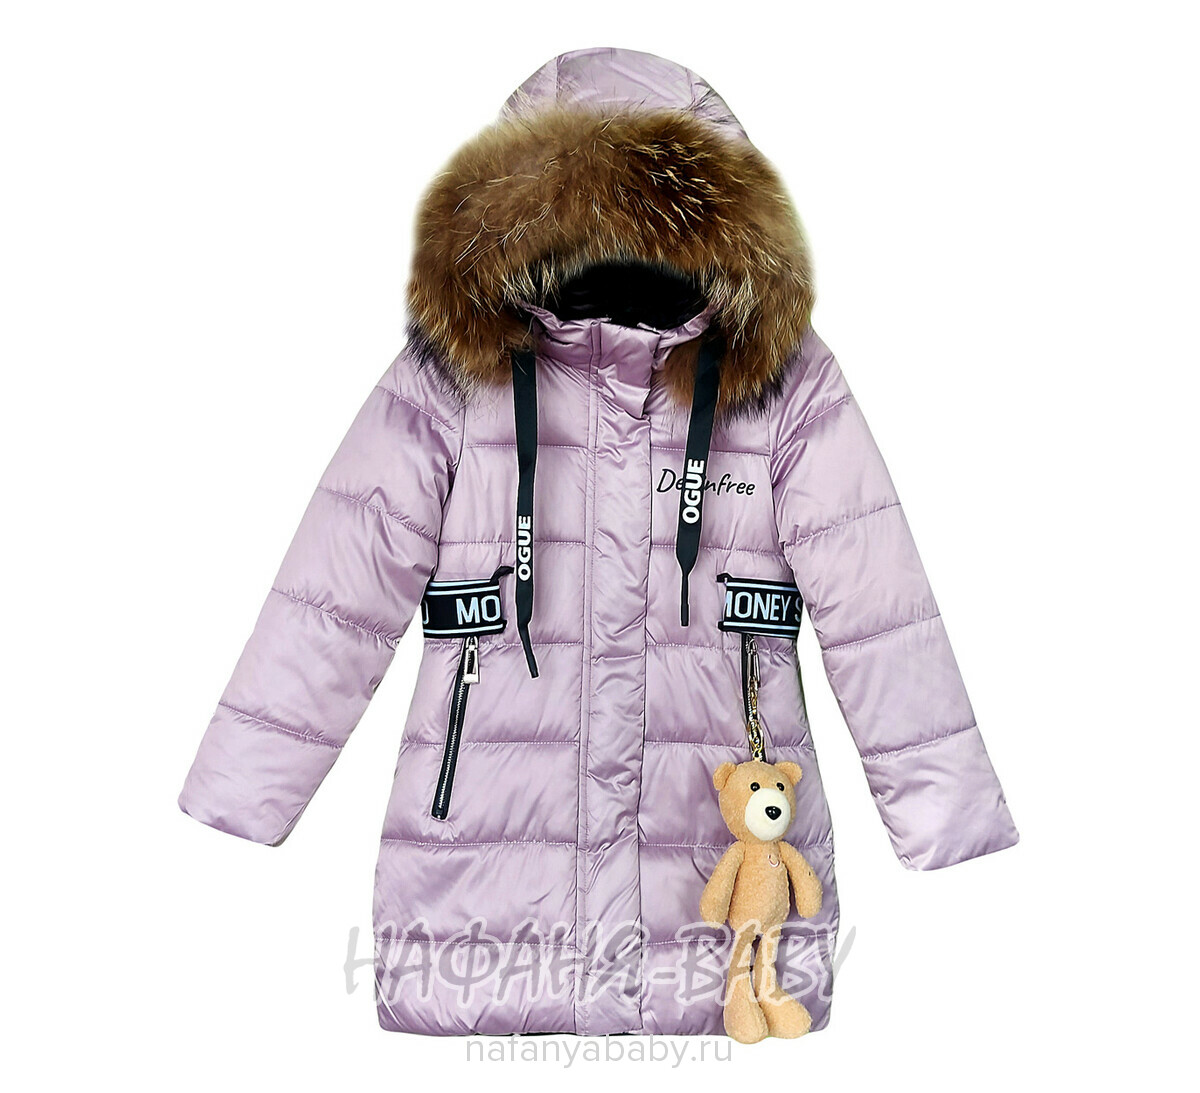 Зимнее пальто DELFIN-FREE арт: 2216, 10-15 лет, 5-9 лет, оптом Китай (Пекин)